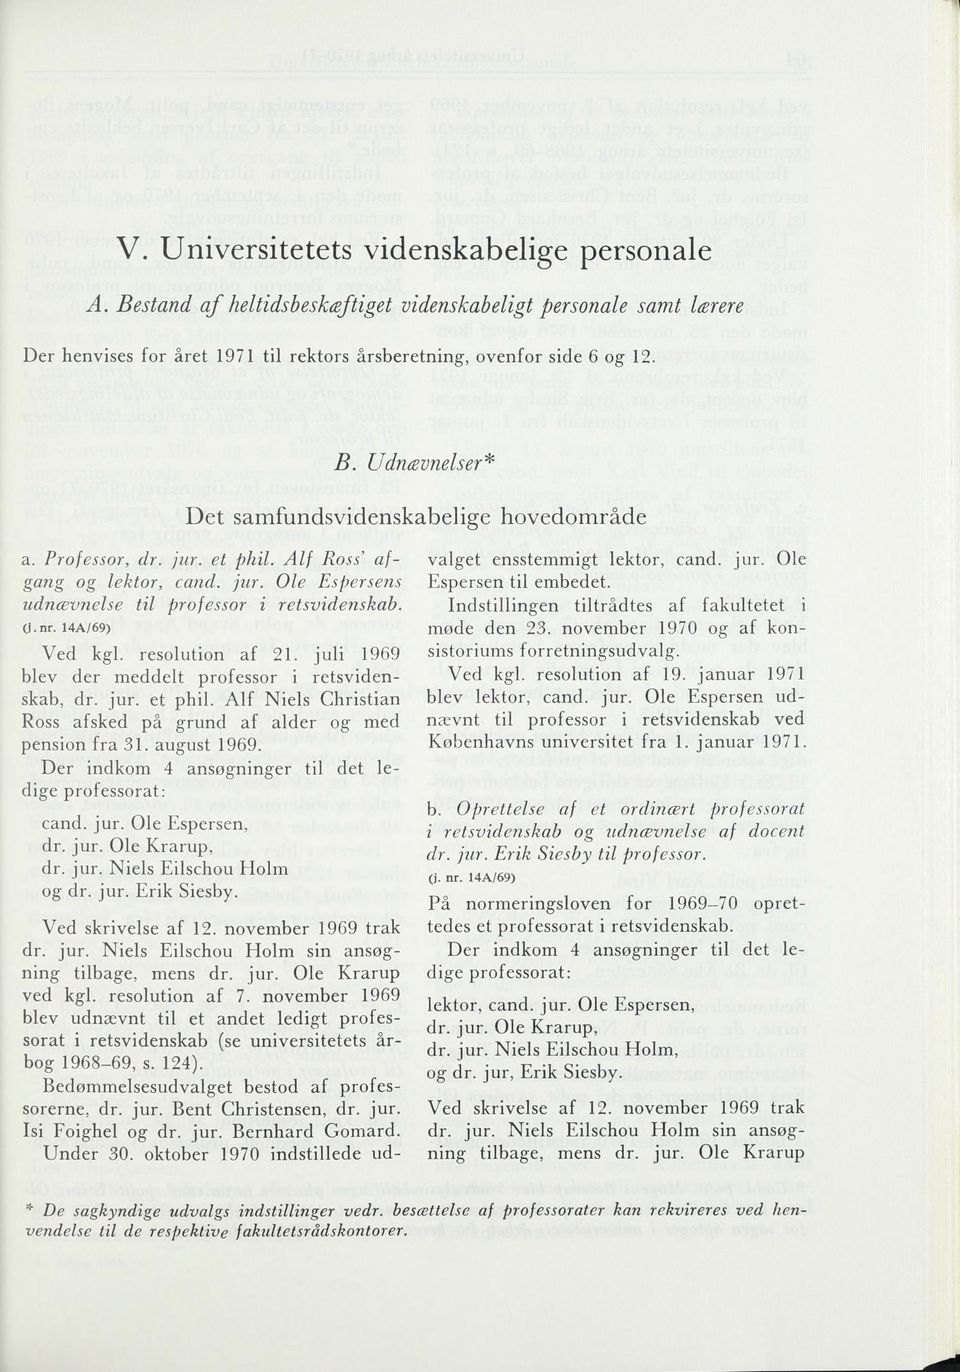 juli 1969 blev der meddelt professor i retsvidenskab, dr. jur. et phil. Alf Niels Christian Ross afsked på grund af alder og med pension fra 31. august 1969.